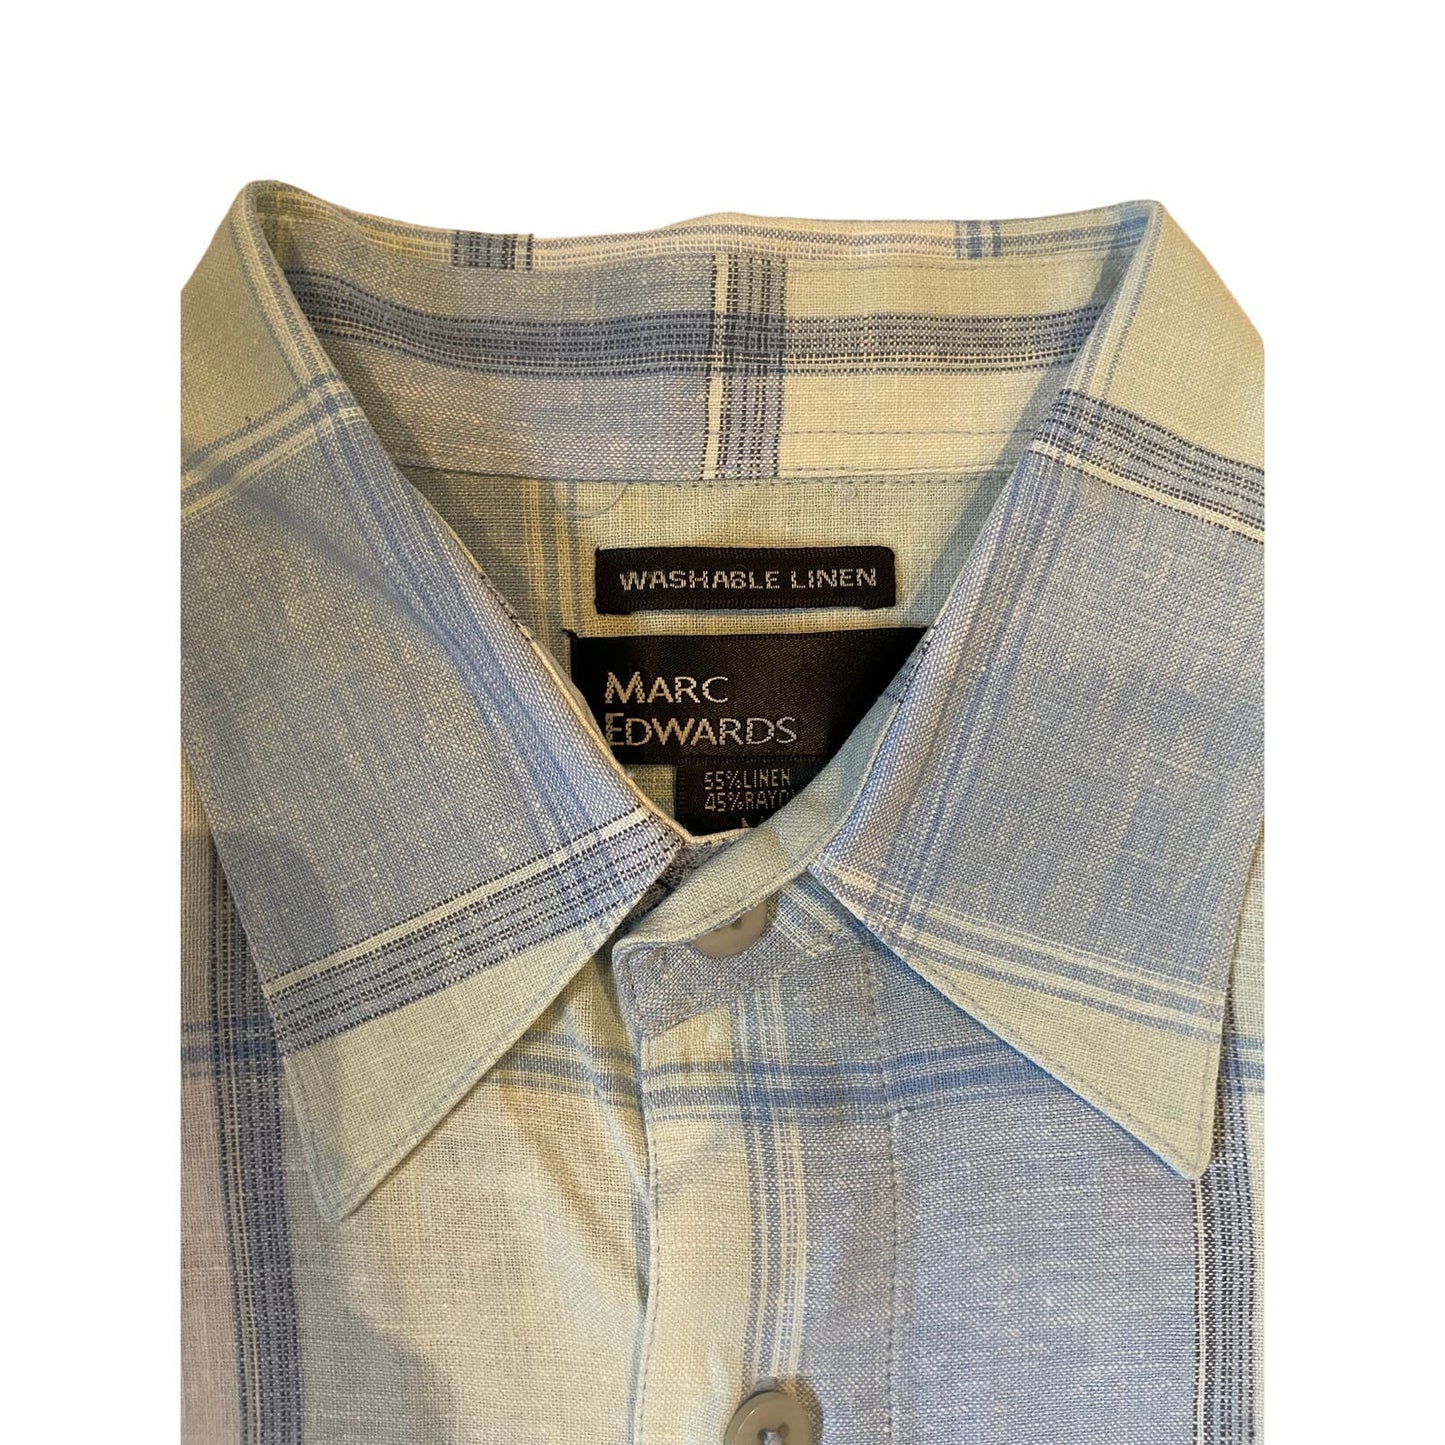 Marc Edwards Men's Linen Blend Short Sleeve Blue Plaid Button Front Shirt Size M